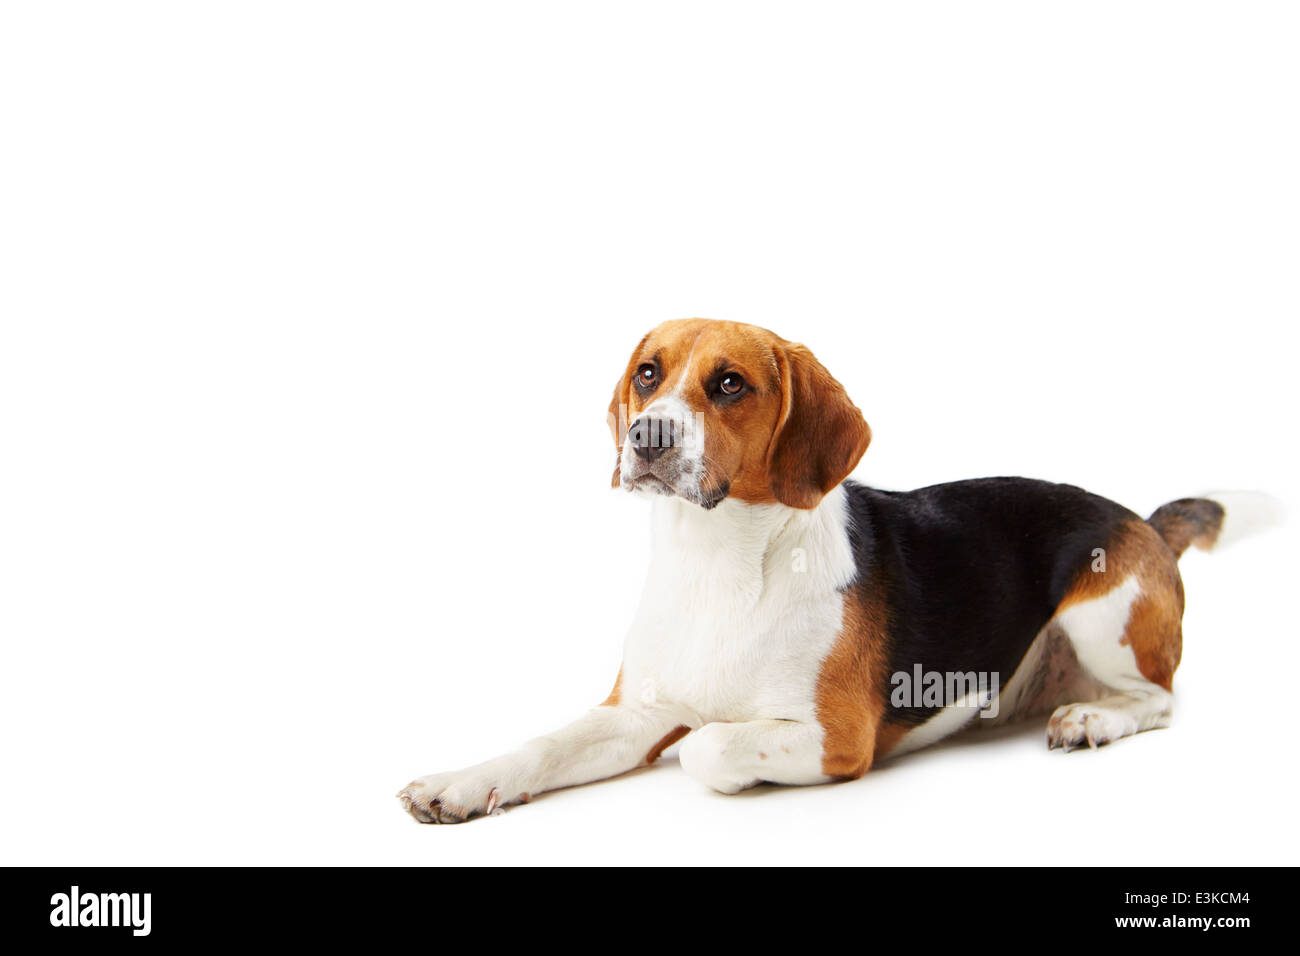 Portrait de chien beagle couché contre fond blanc Banque D'Images